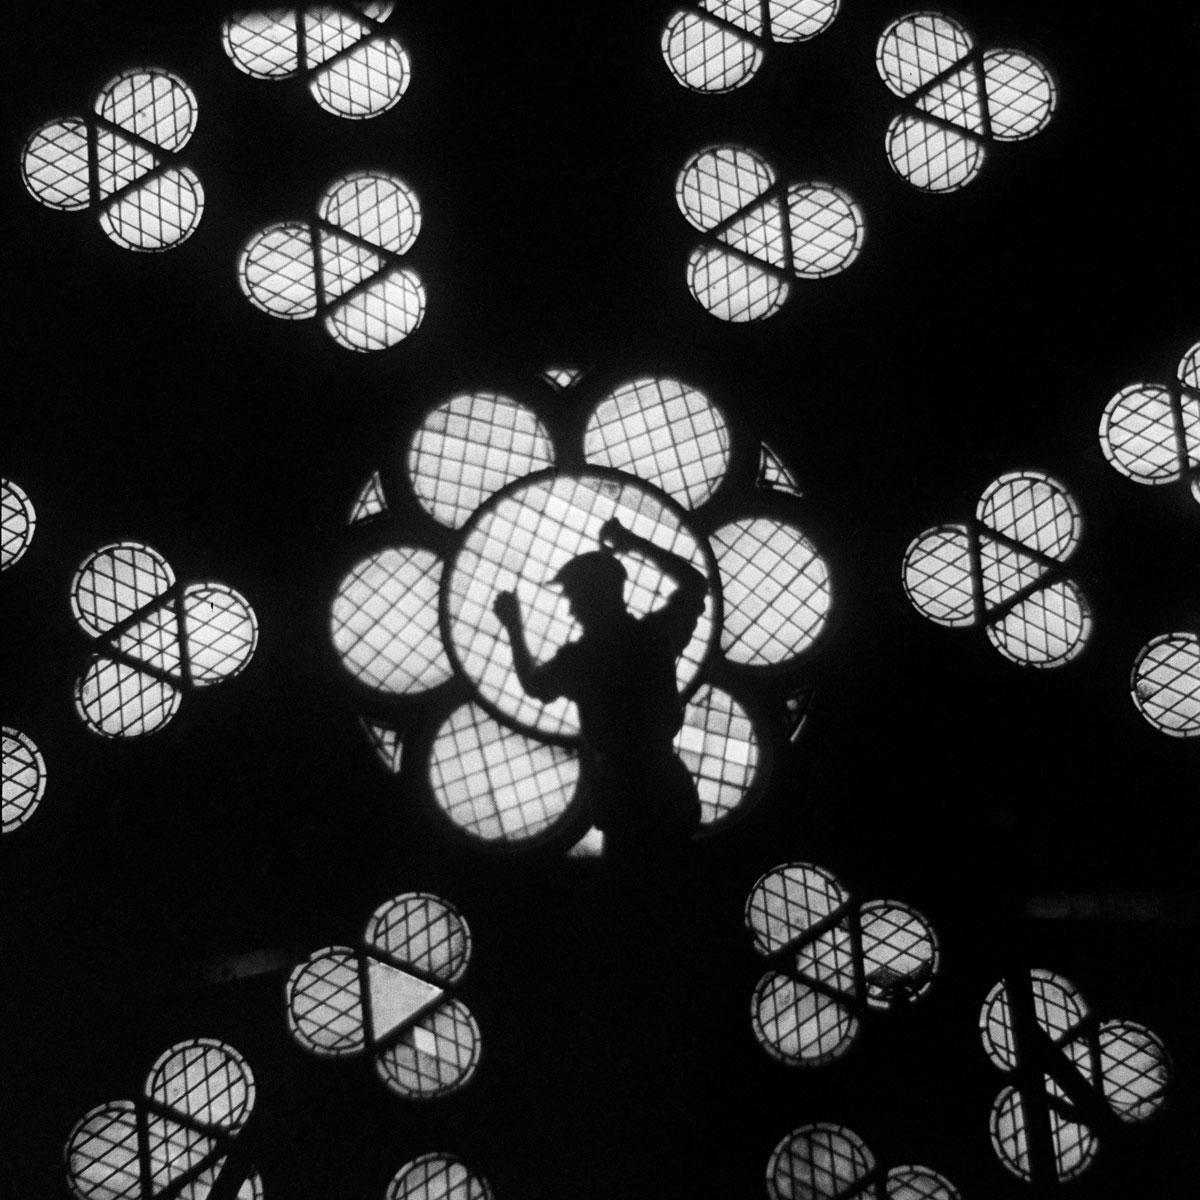 Rosace, Cathédrale Notre-Dame de Paris, vers 1935. Dominique Lecourt: 